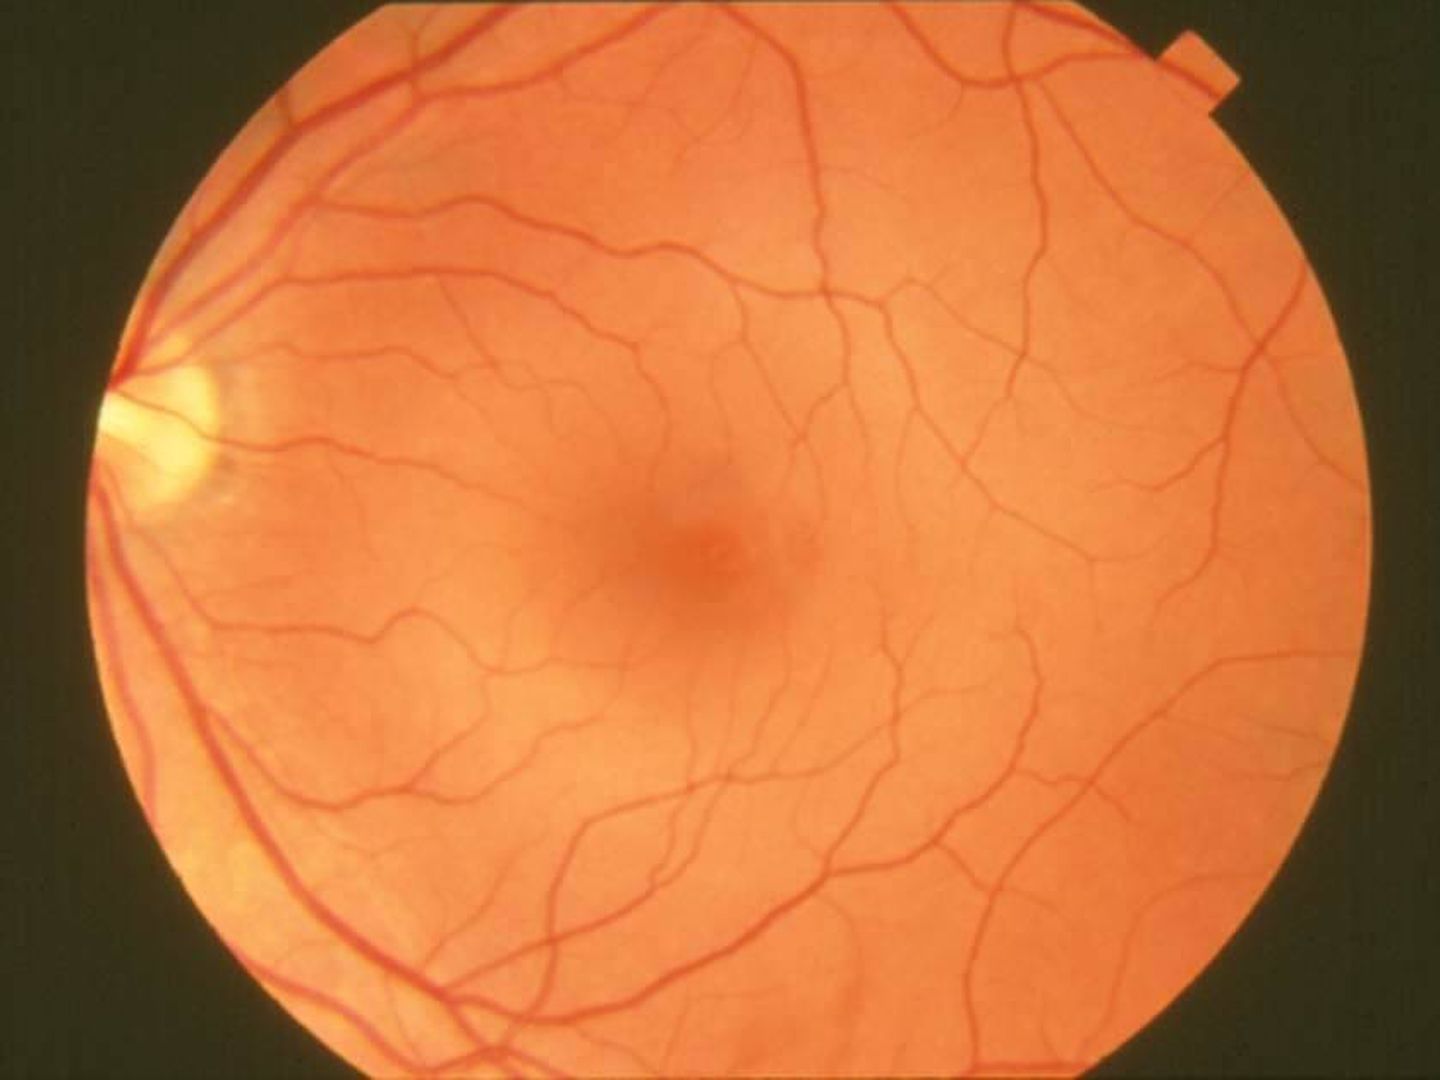 Los investigadores han utilizado la IA para descubrir la edad retiniana. (Wikipedia)